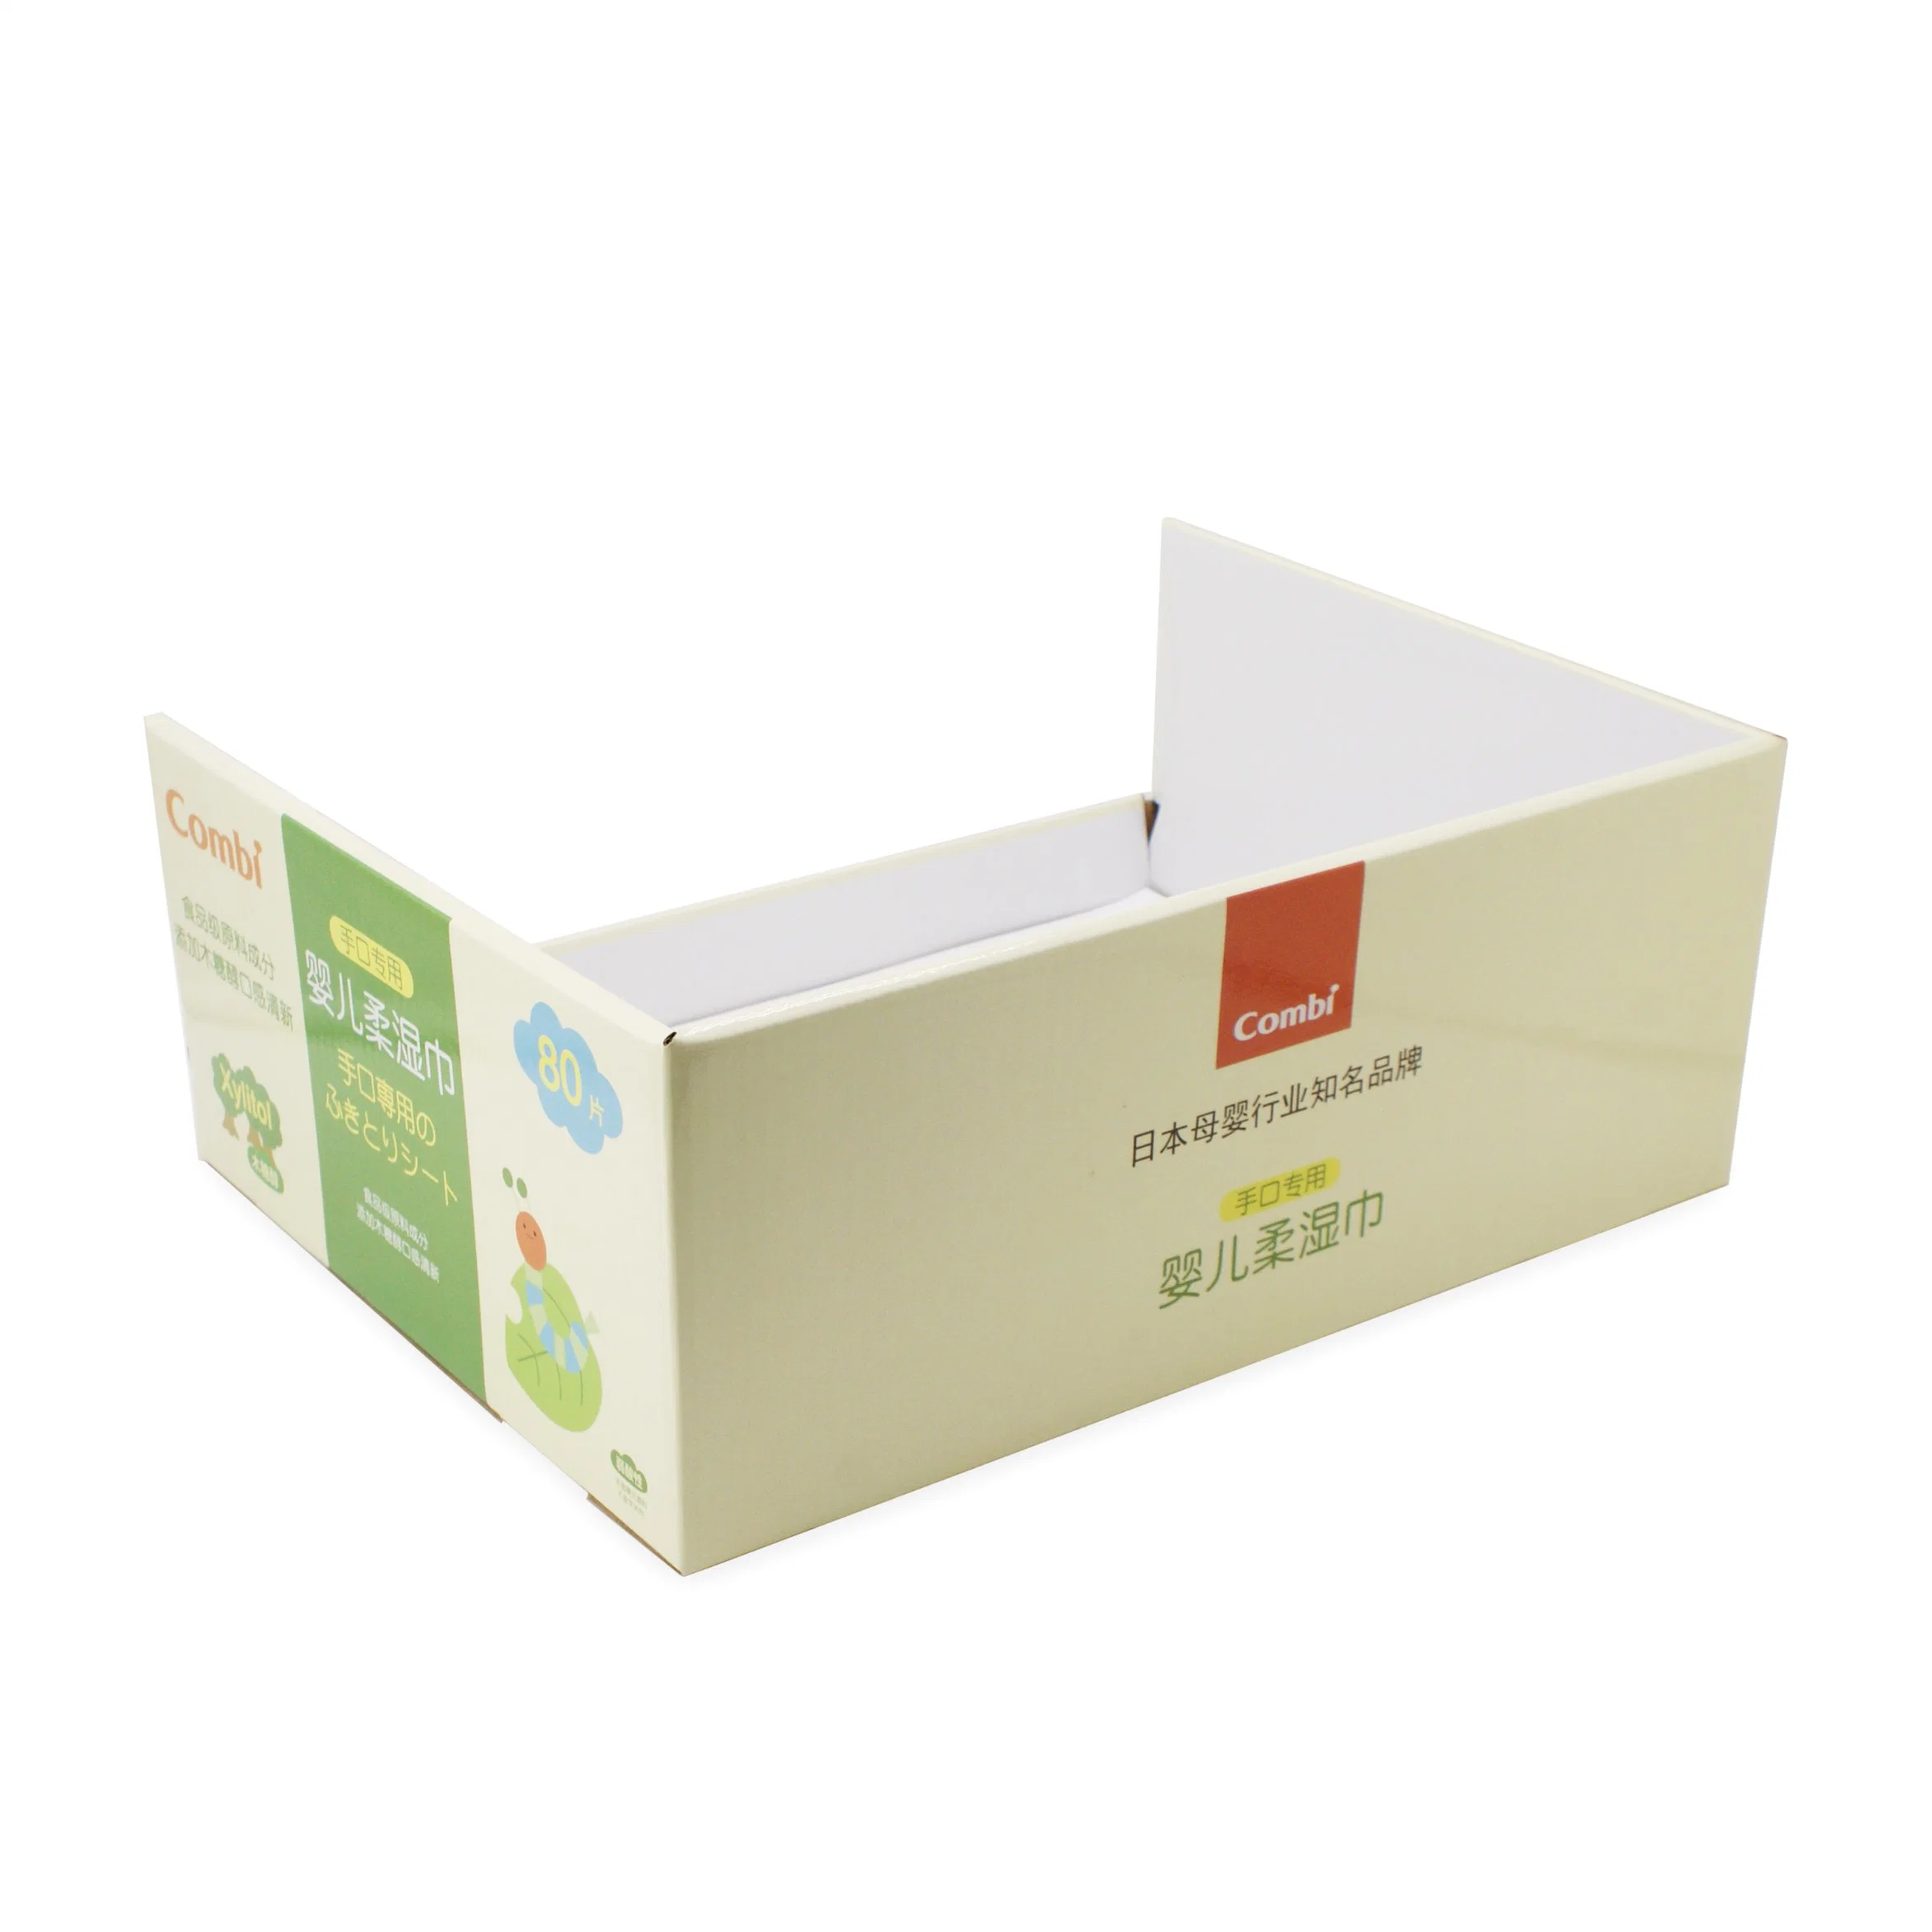 China fabricante de embalagens de papel Exibição de tecido molhado Box